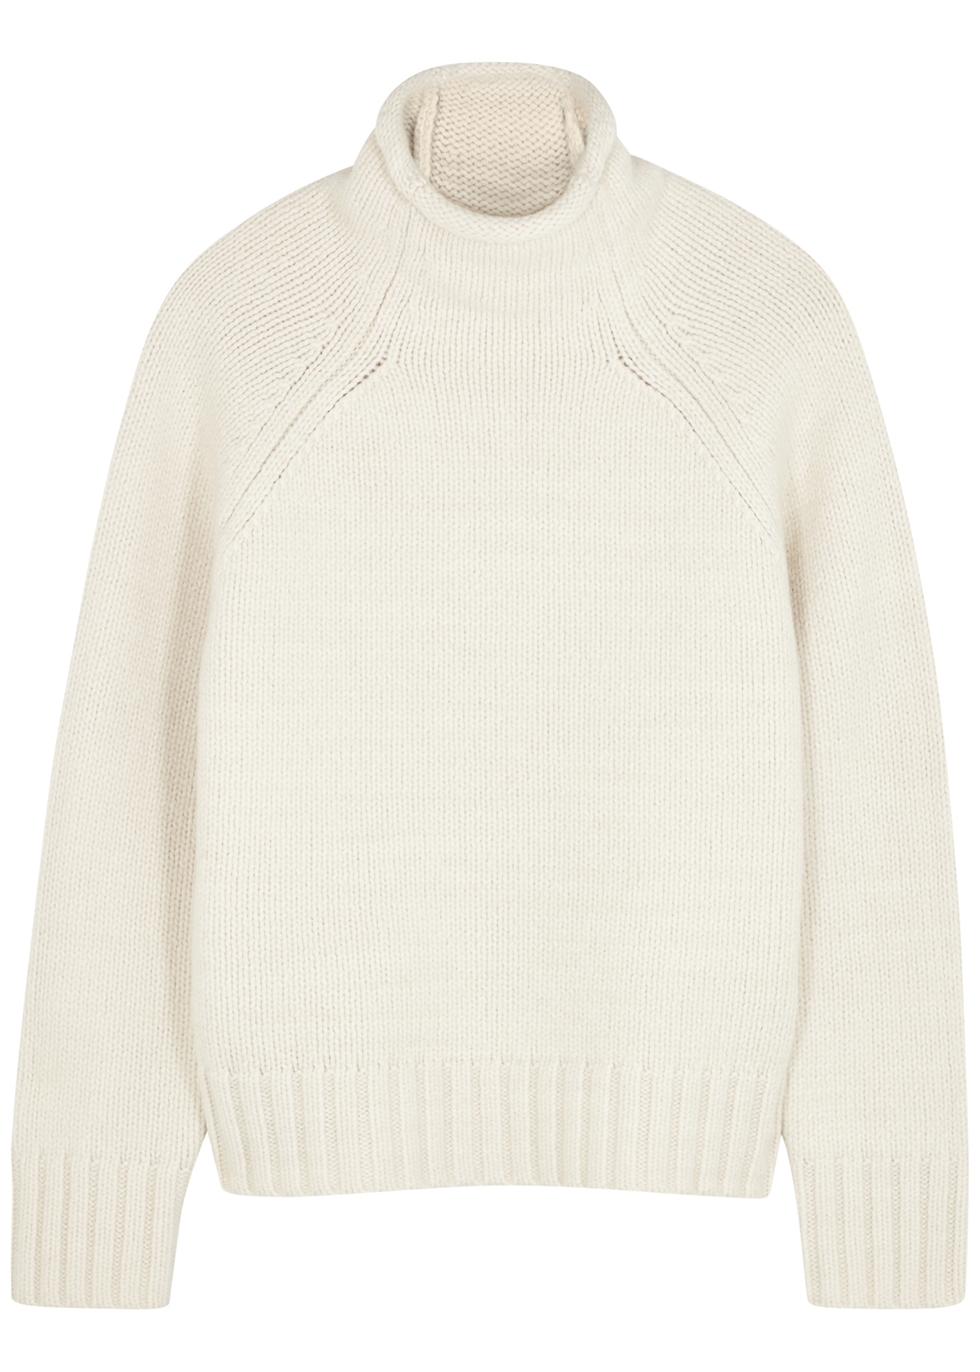 Claremont cream merino wool-blend jumper